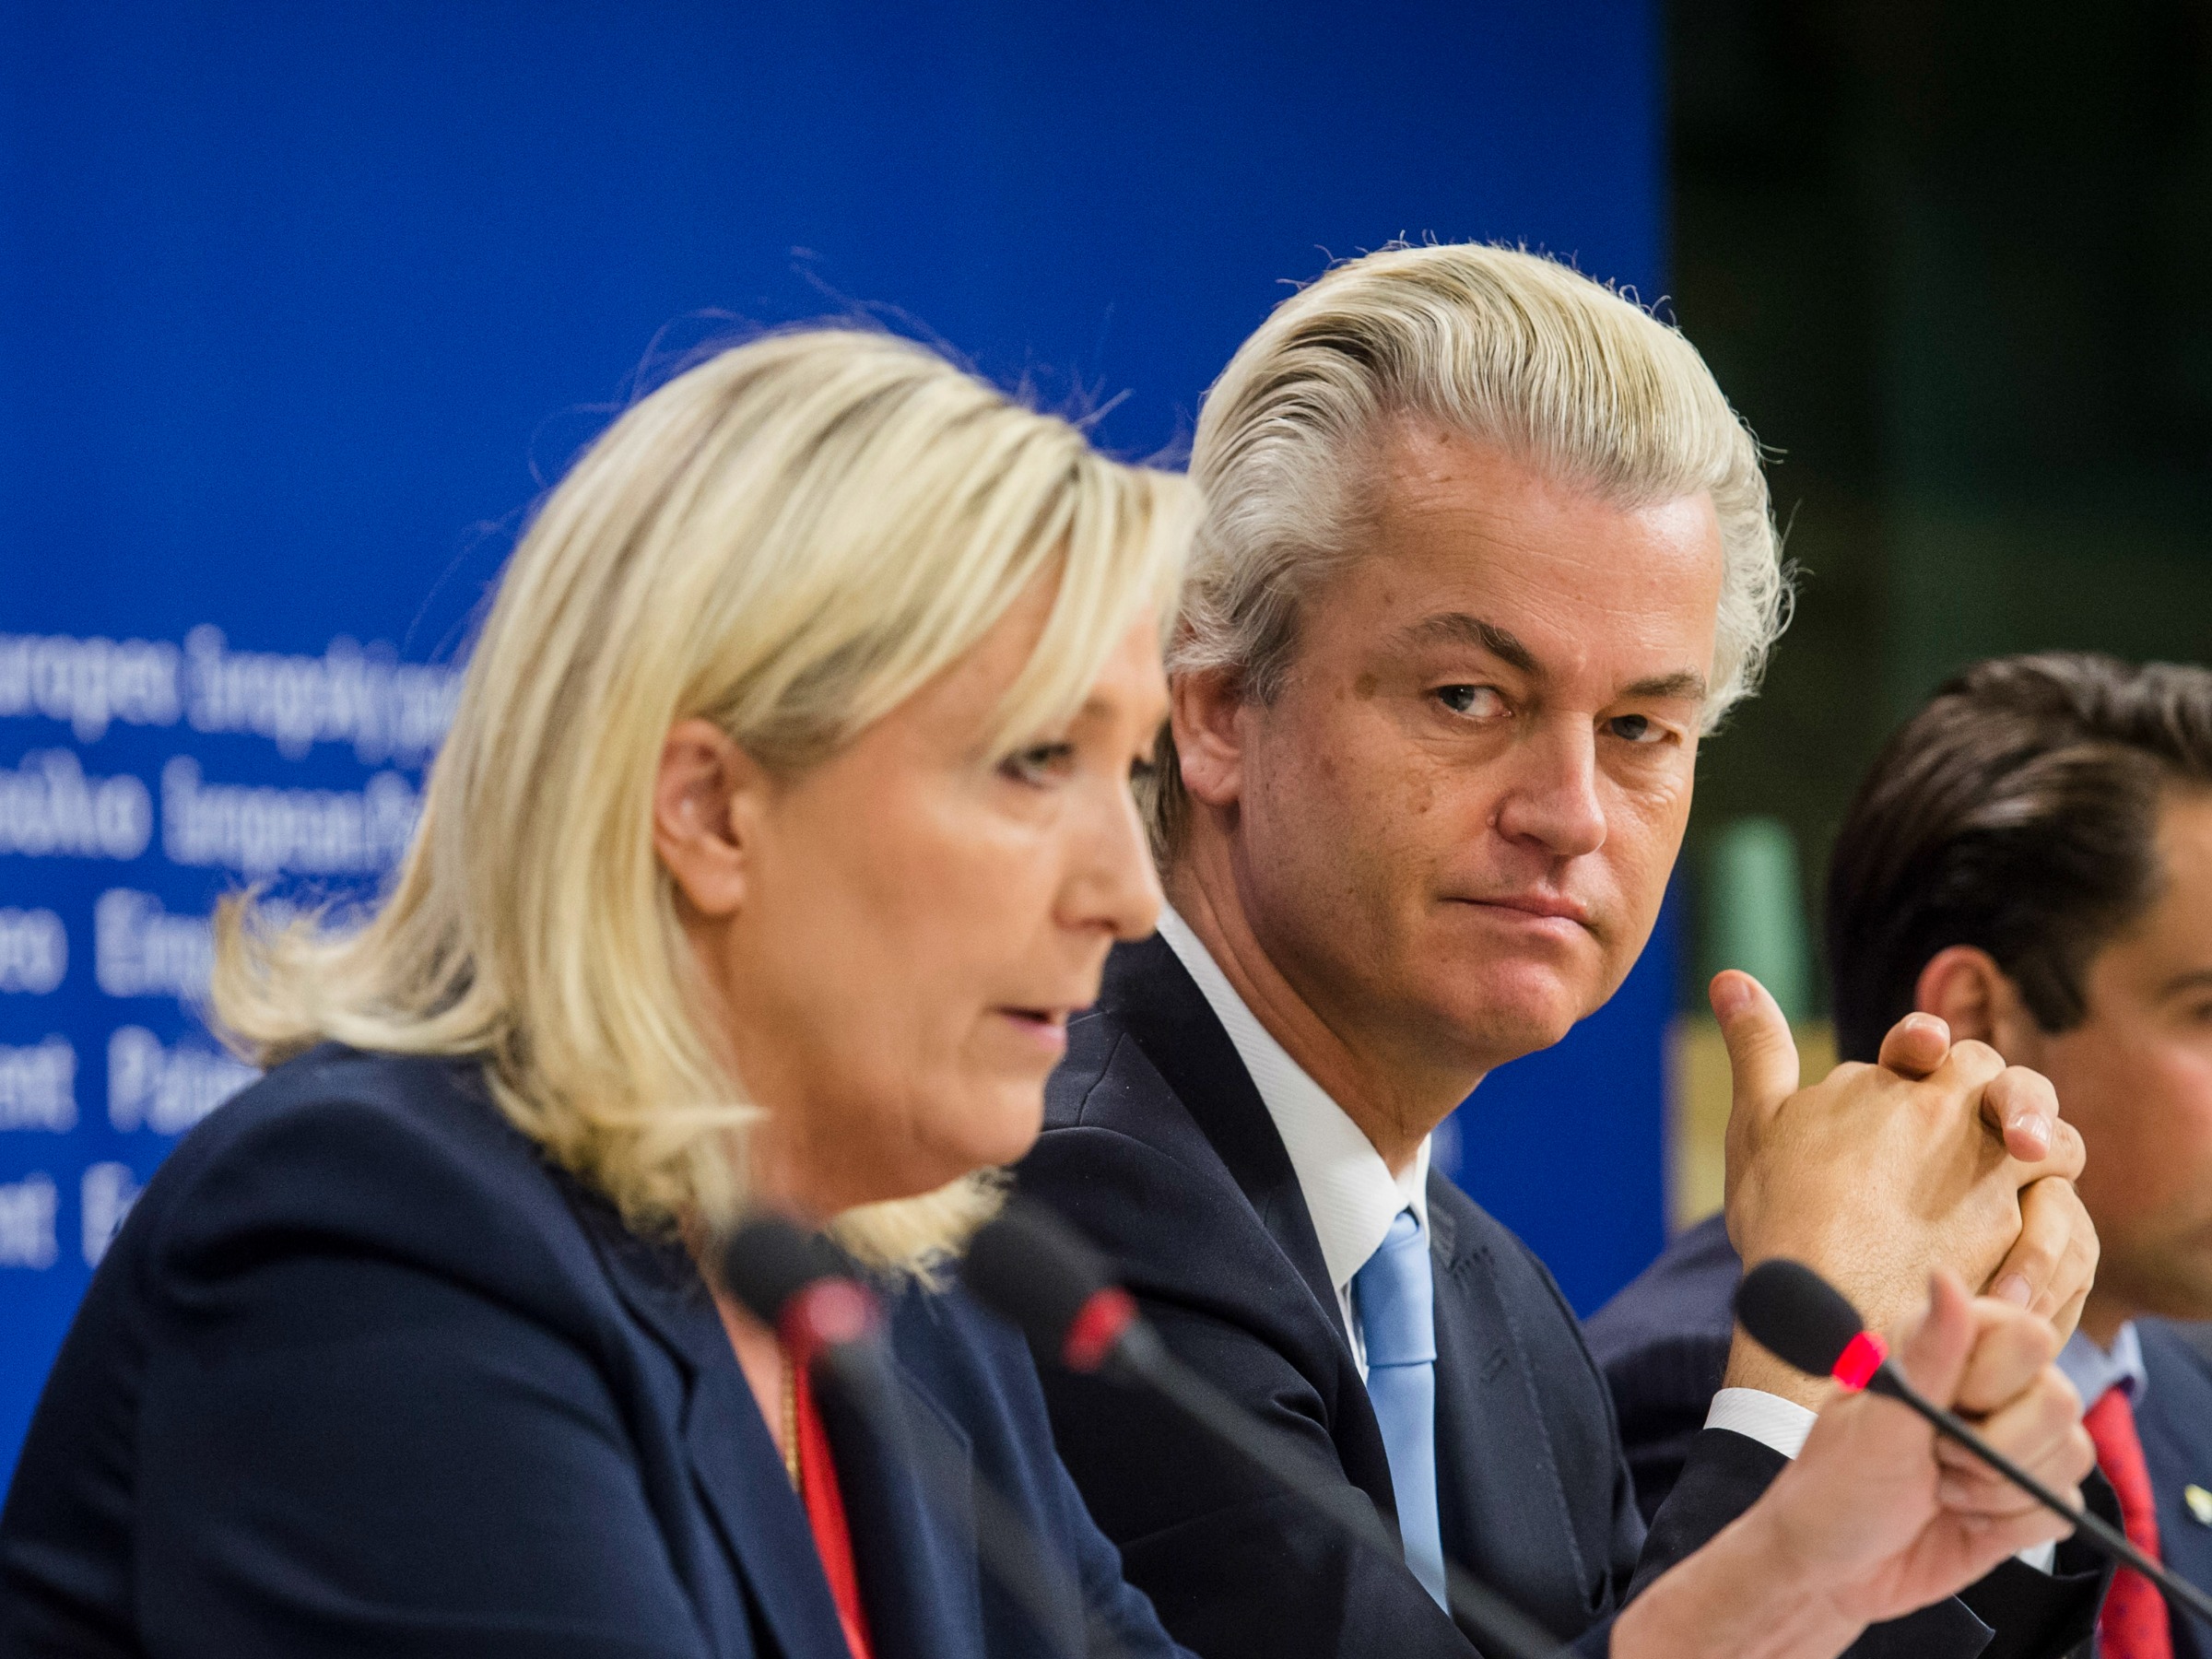 Geert Wilders Marine Le Pen populist verkiezingen populisme pvv front national